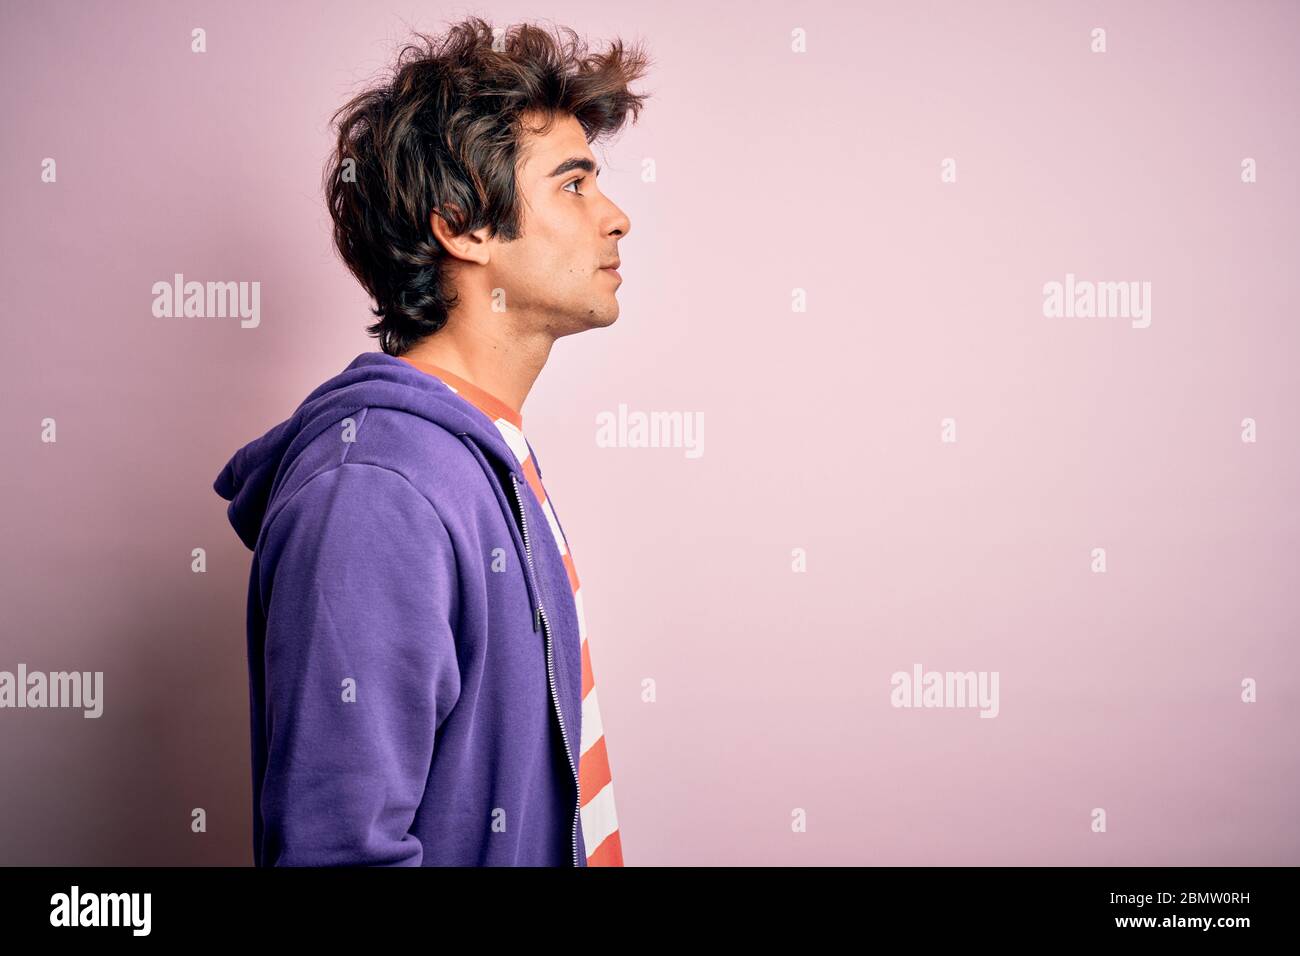 Jeune homme portant un t-shirt rayé et un sweat-shirt violet sur un arrière-plan rose isolé regardant sur le côté, relax profil pose avec visage naturel avec confid Banque D'Images